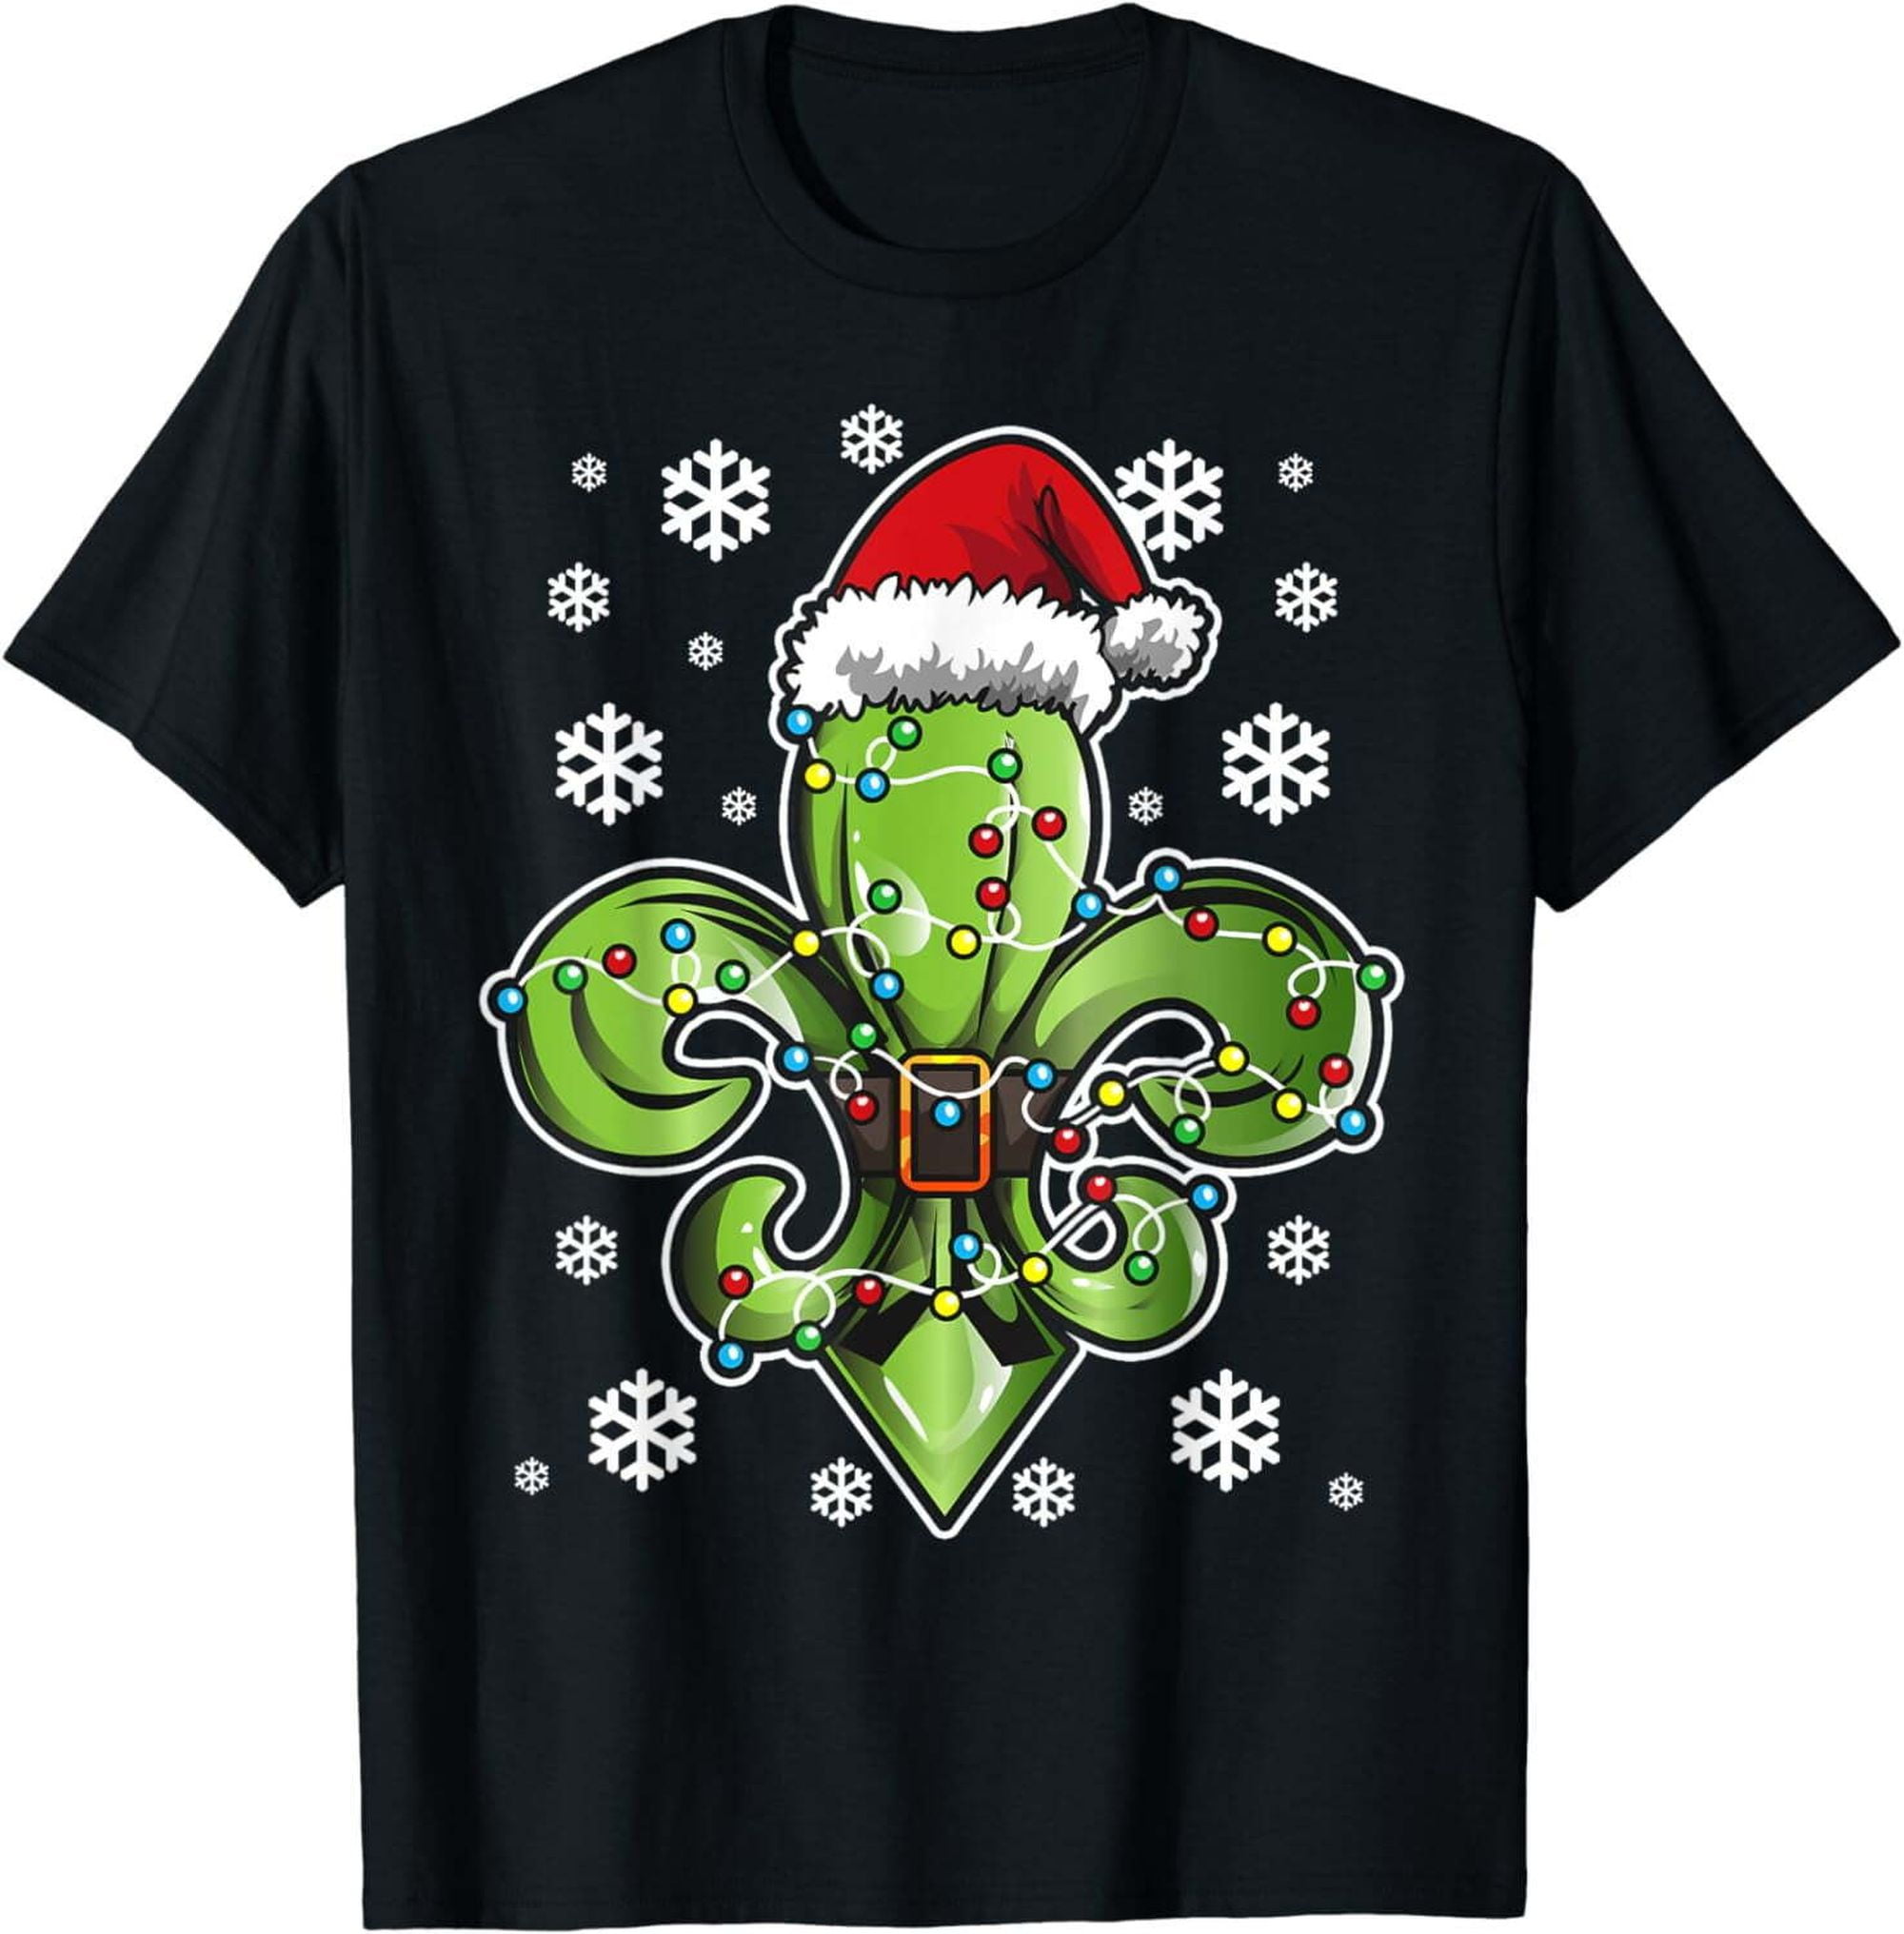 Louisiana Christmas T-Shirt with Fleur-De-Lis Lily Design - Walmart.com